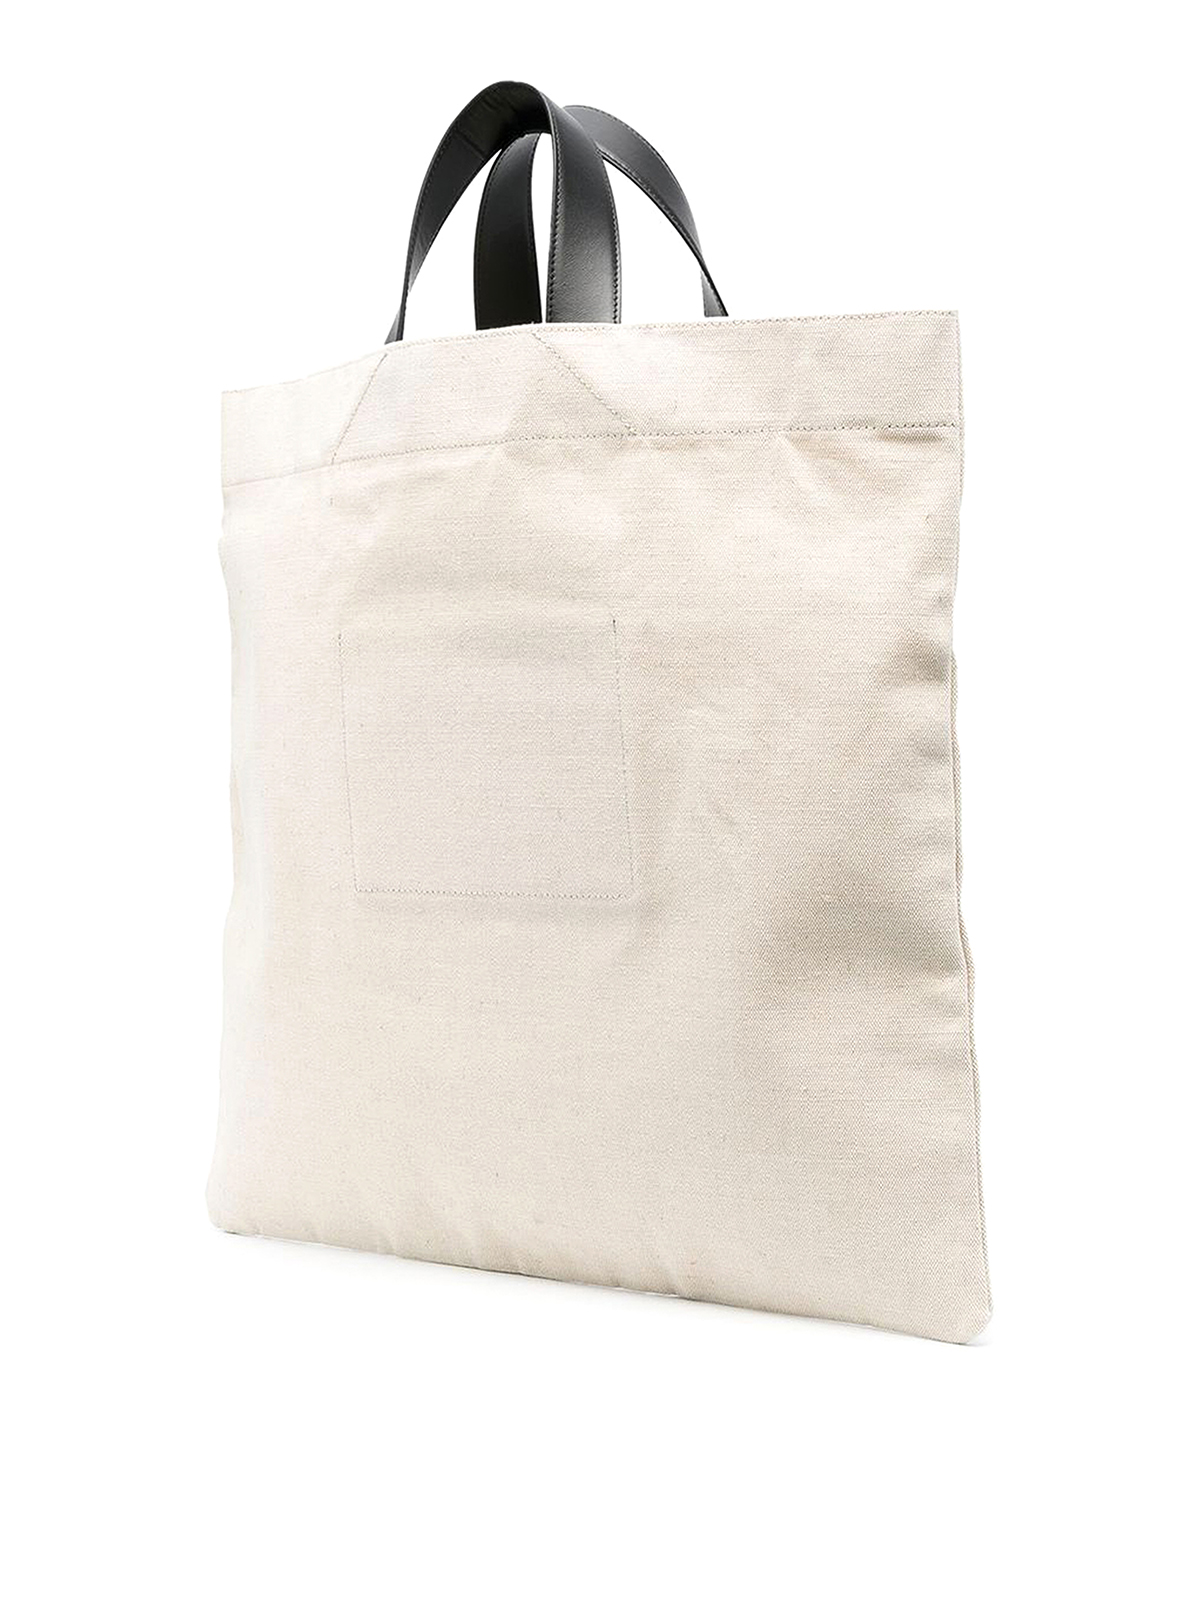 Orange Color Cotton Bags | 100% Cotton Bags Online